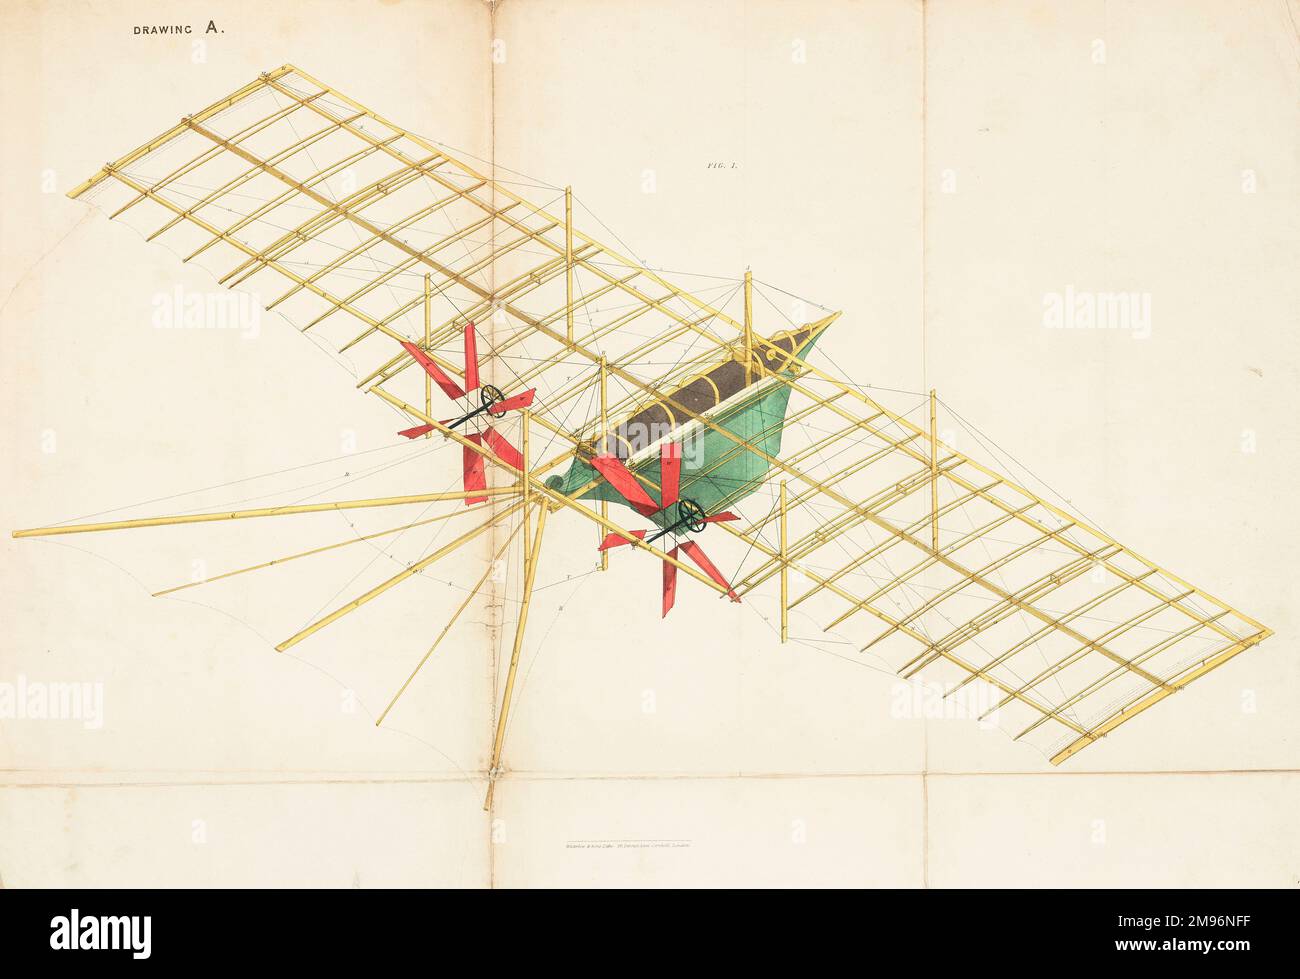 Der Luftdampfwagen – Ansicht ohne Abdeckung. Diese Flugmaschine wurde 1842 von William Samuel Henson (1812-1888) und John Stringfellow (1799-1883) patentiert. Stockfoto